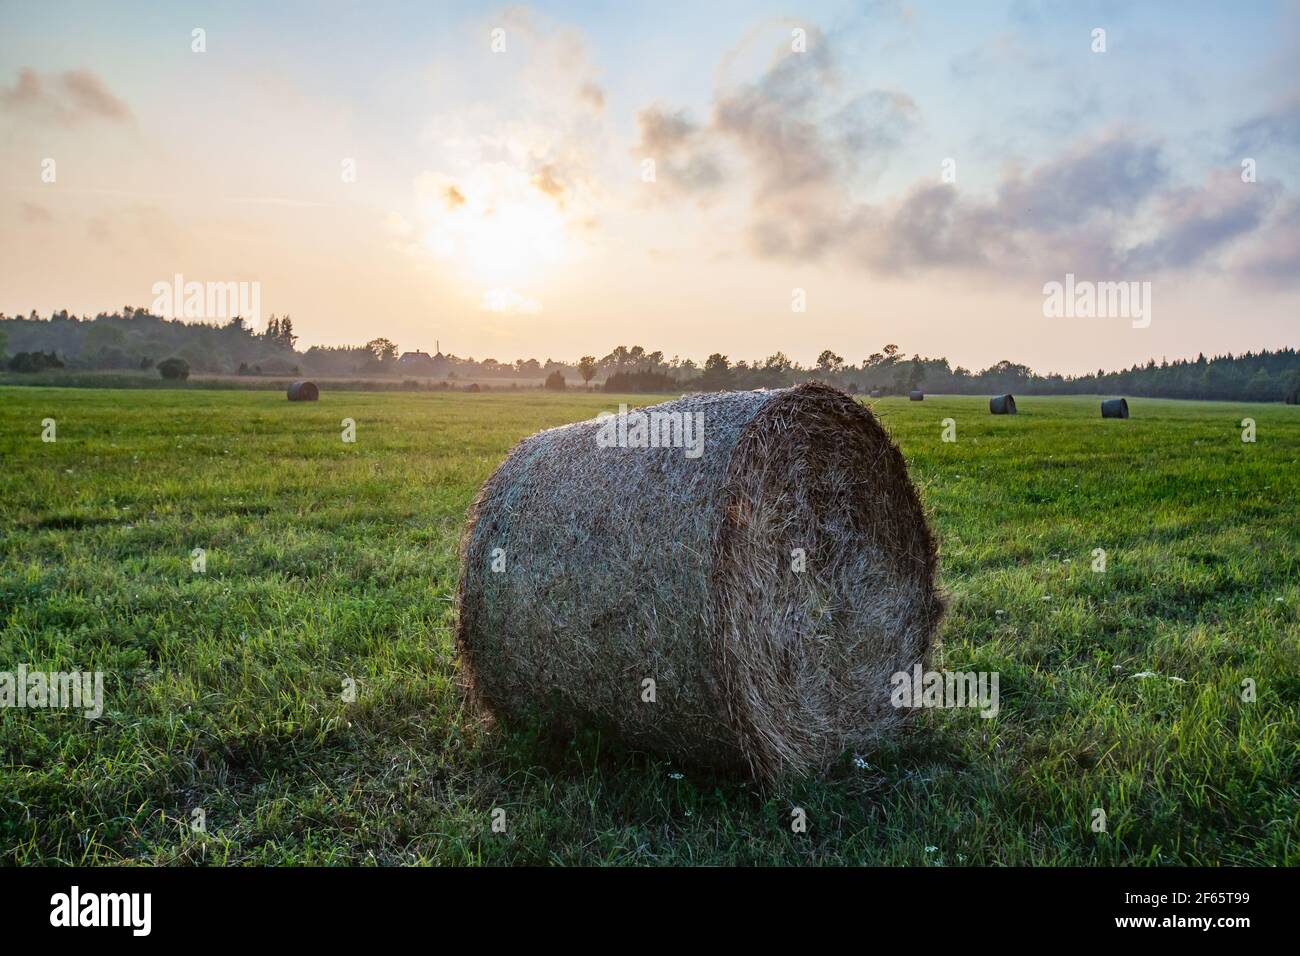 La botte de foin roule sur le champ d'herbe. Coucher de soleil et brouillard léger. Paysage rural de l'Estonie. Banque D'Images